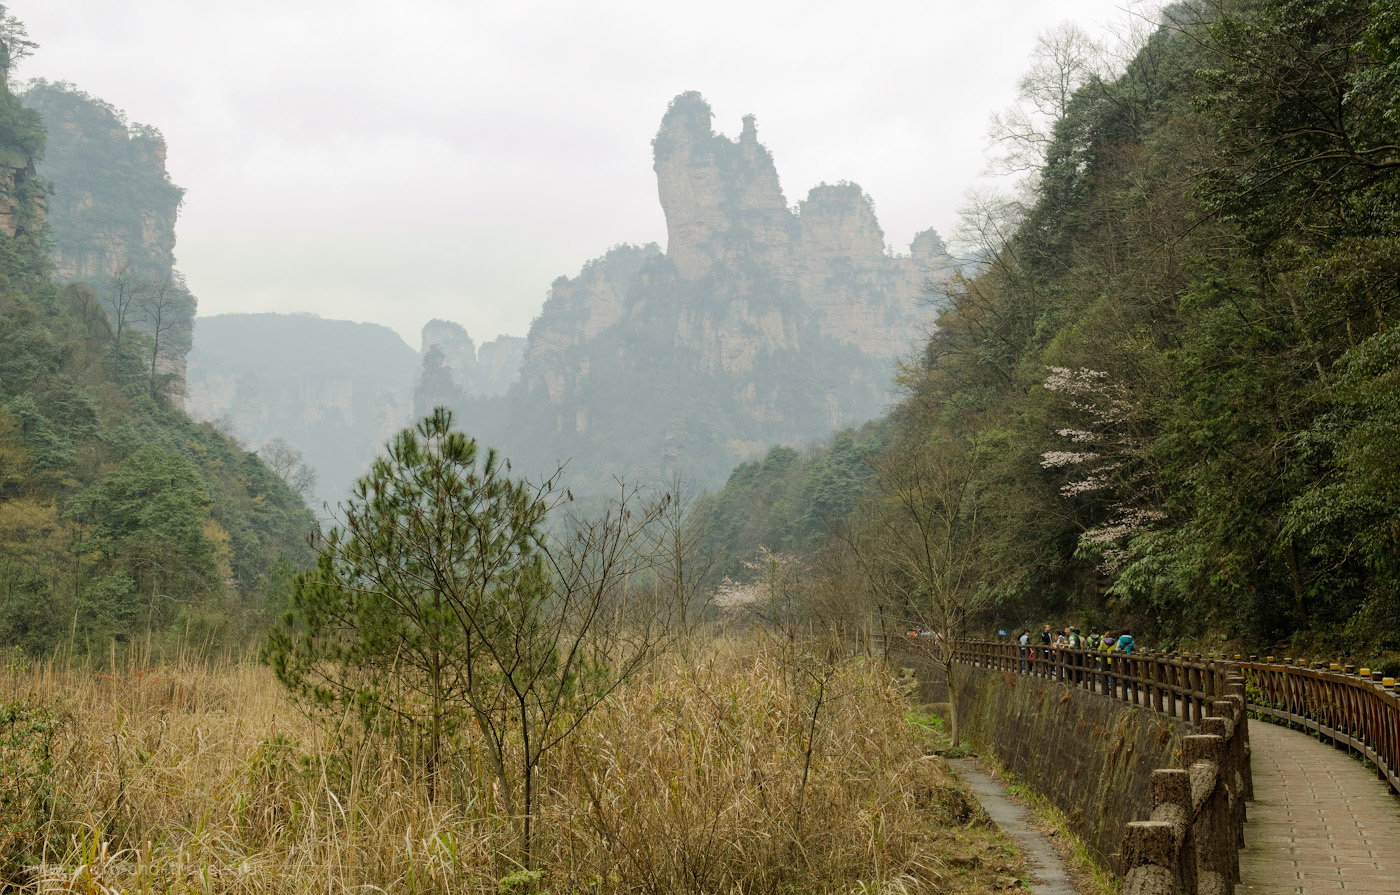 6. Будут эти пейзажи парка Чжанцзяцзе в Китае еще долго мне сниться. Отчет о прогулке из деревни Улинъюань самостоятельно.